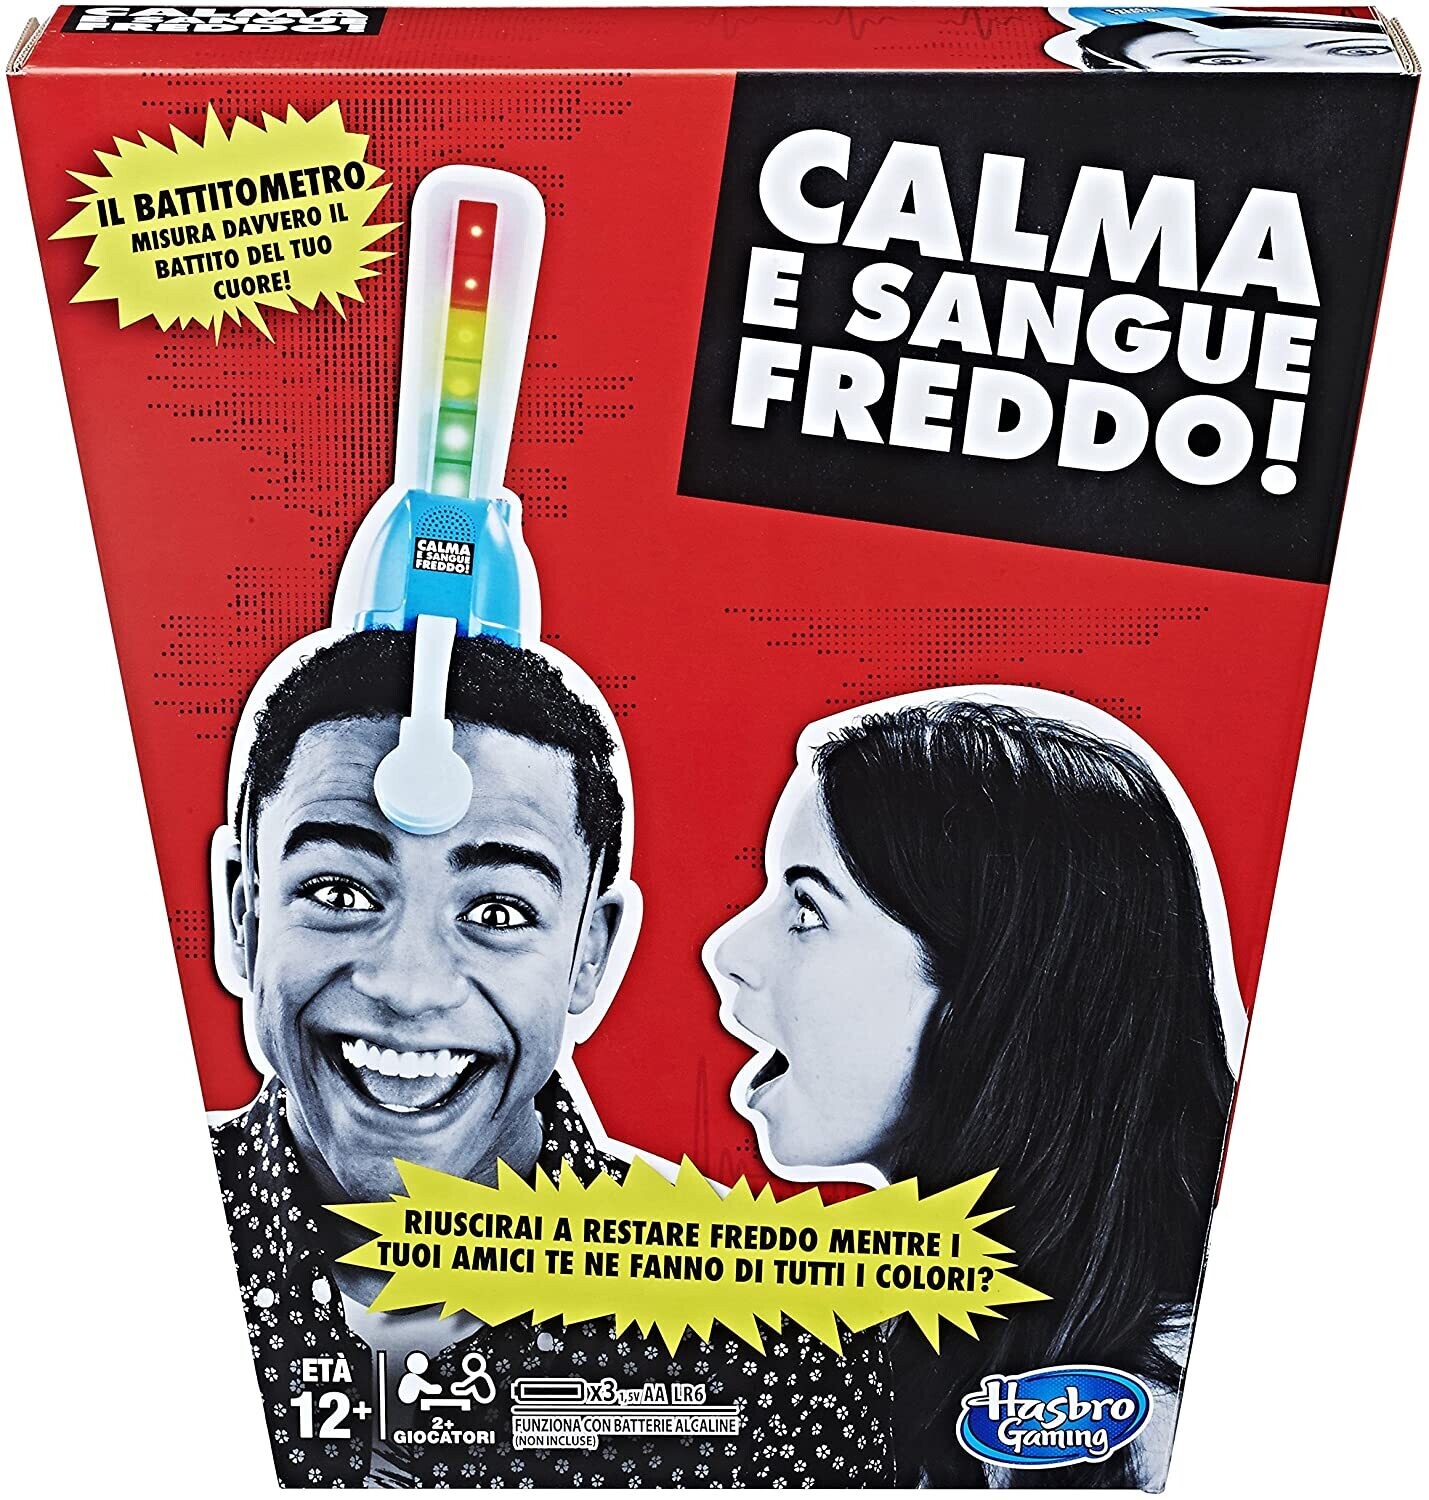 CALMA E SANGUE FREDDO